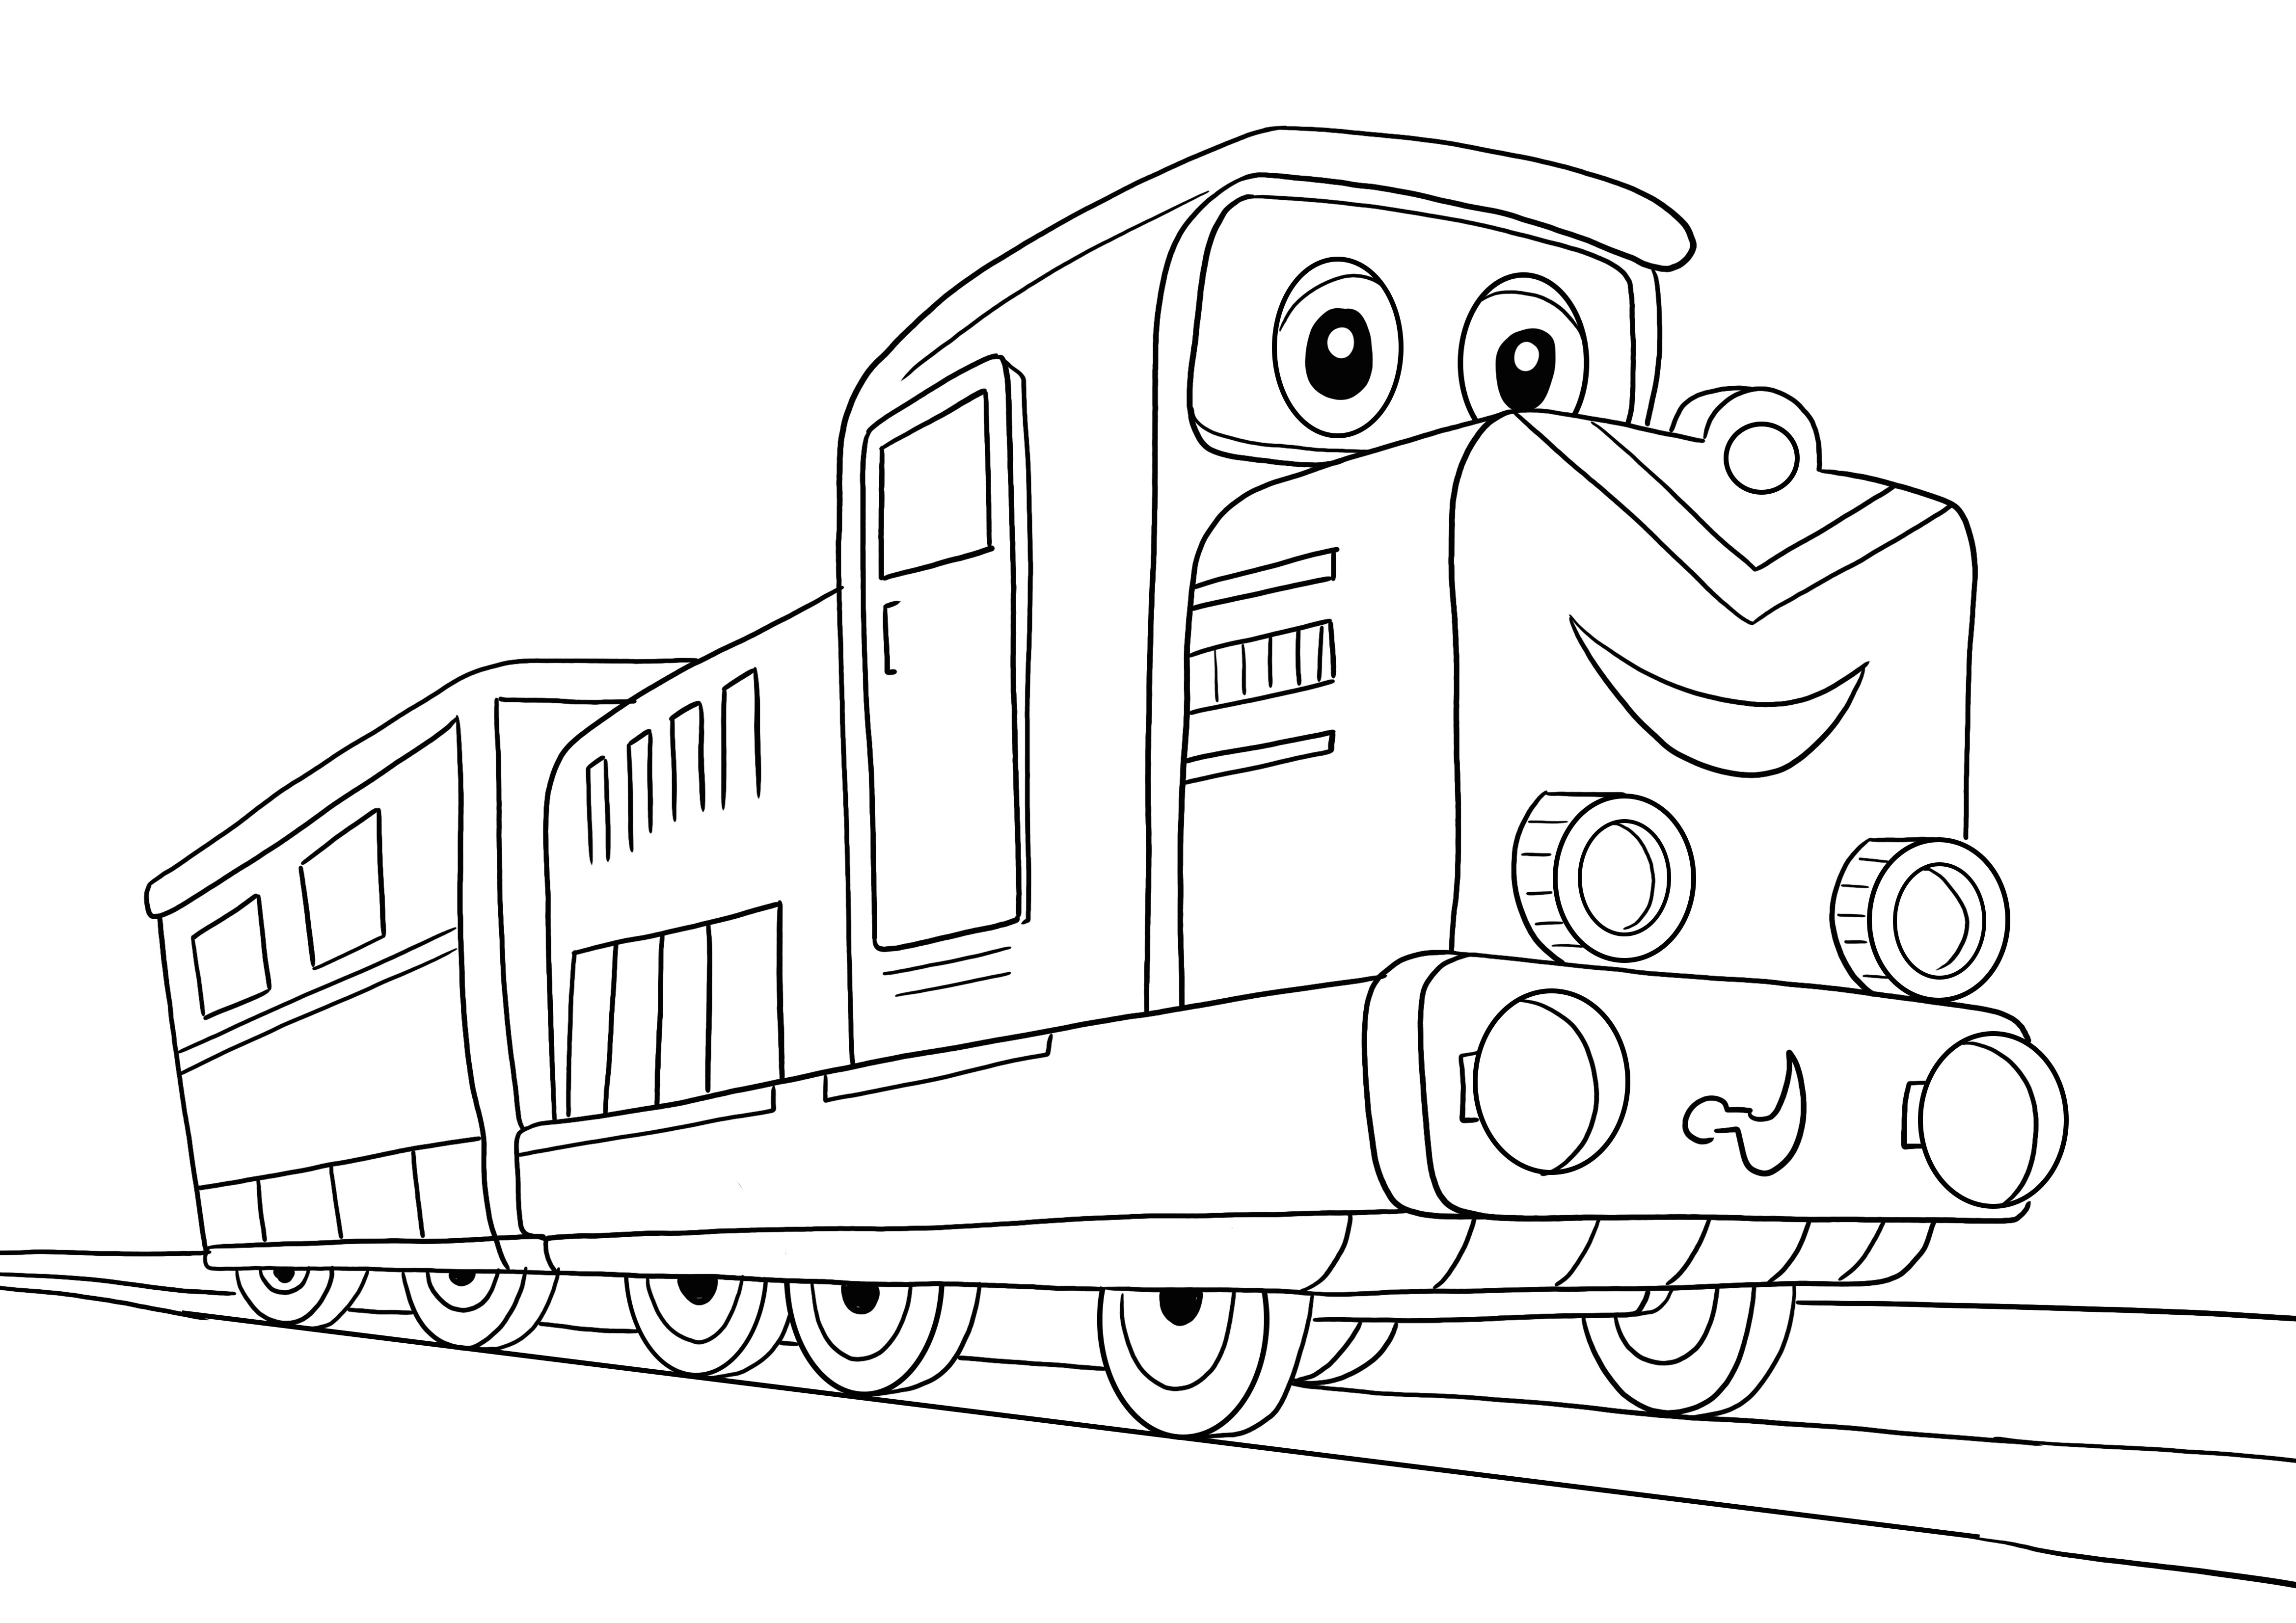 Aqui está a nossa imagem de coloração de trem dos desenhos animados para as crianças aprenderem com diversão